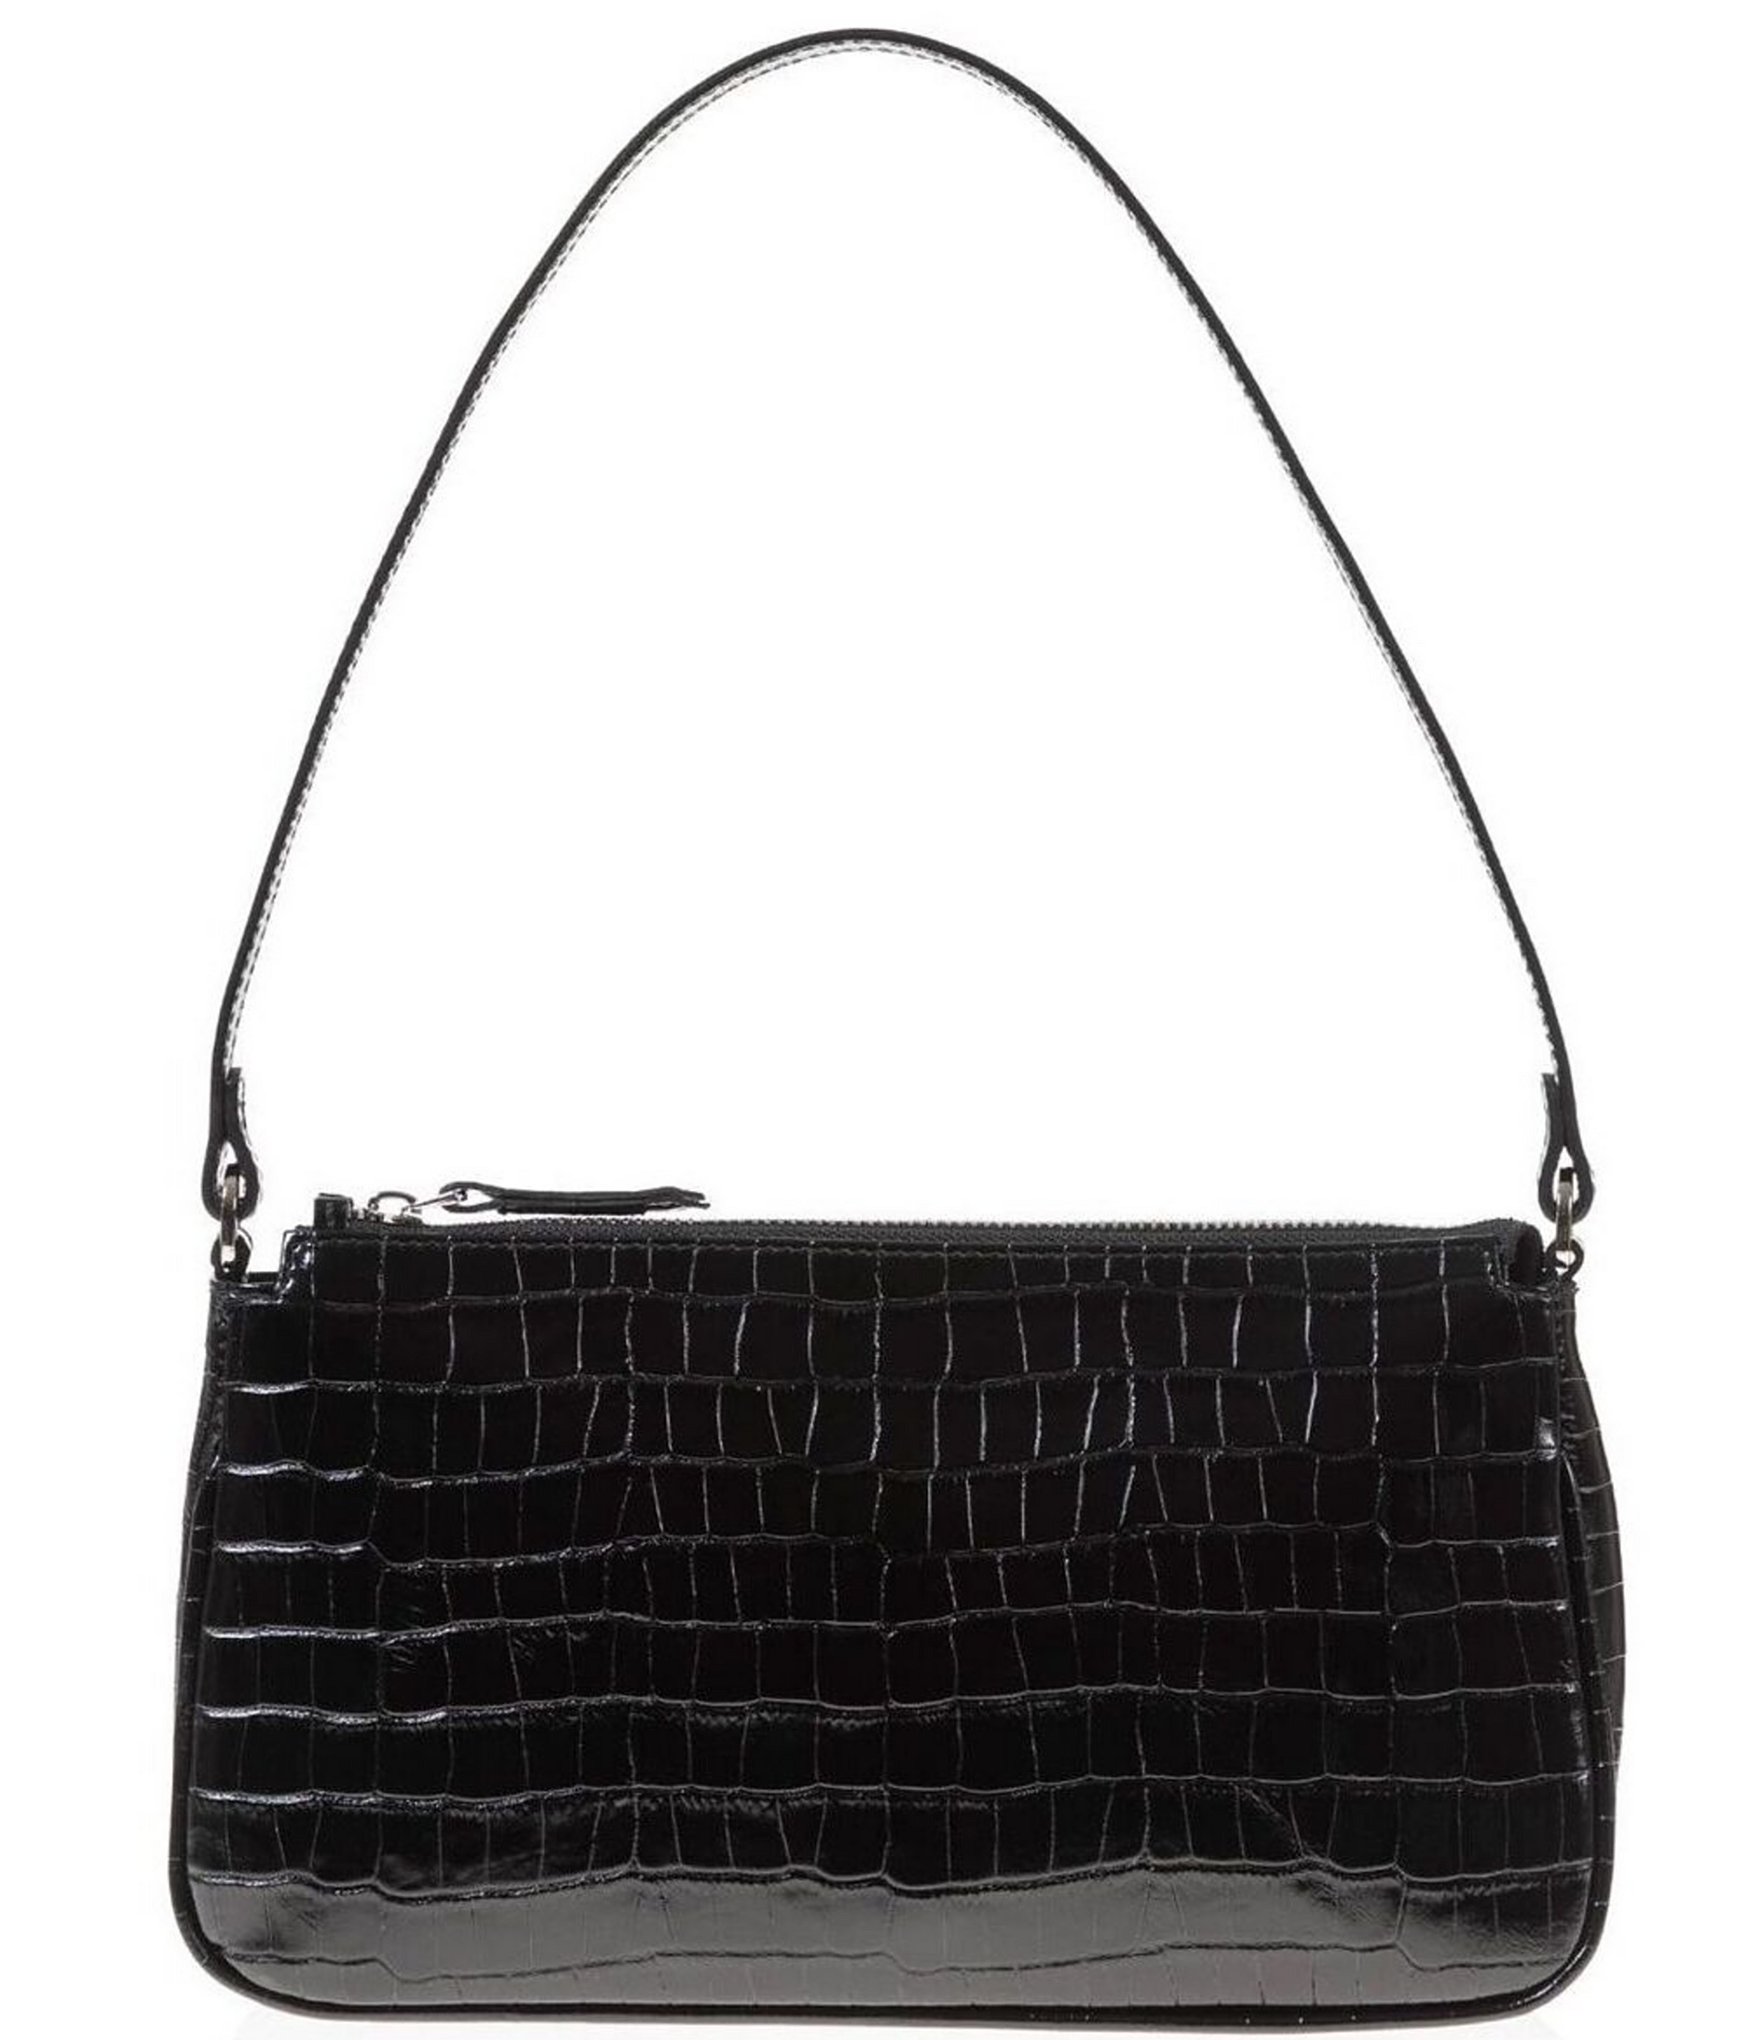 JOANNA MAXHAM Baguette Polished Leather Shoulder Bag | Dillard's